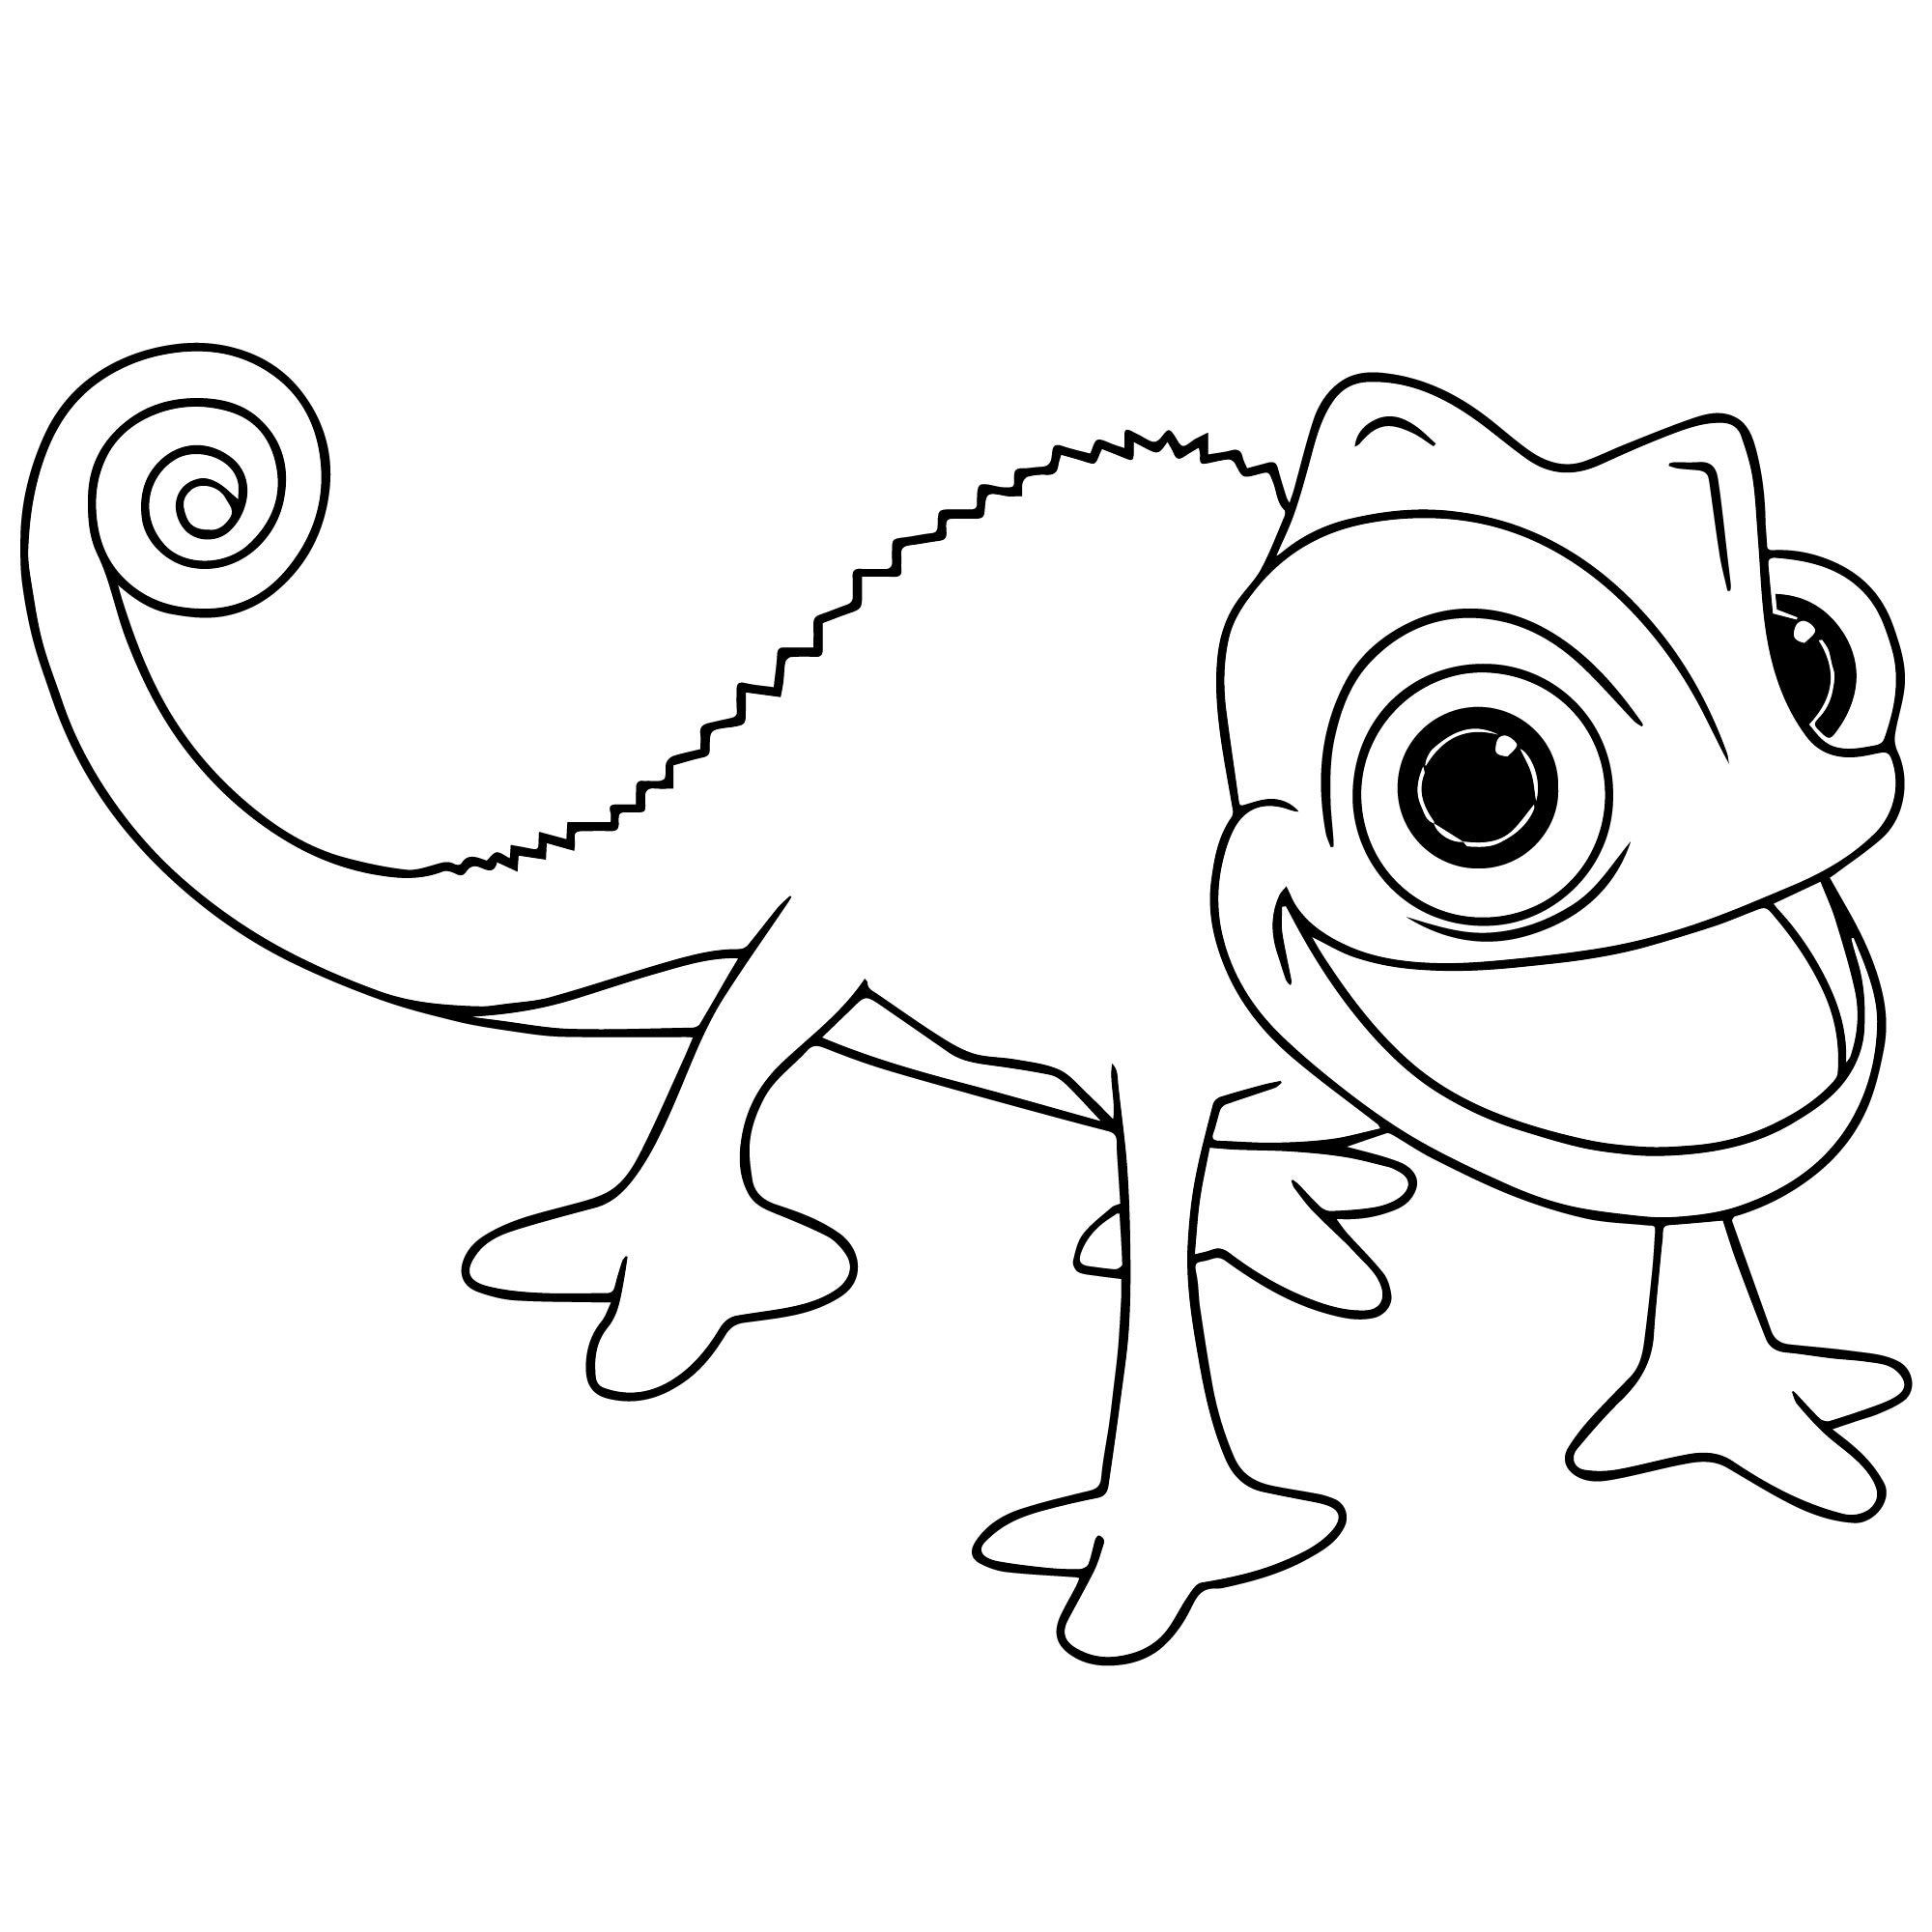 Раскраска хамелеон скачать, распечатать или рисовать онлайн